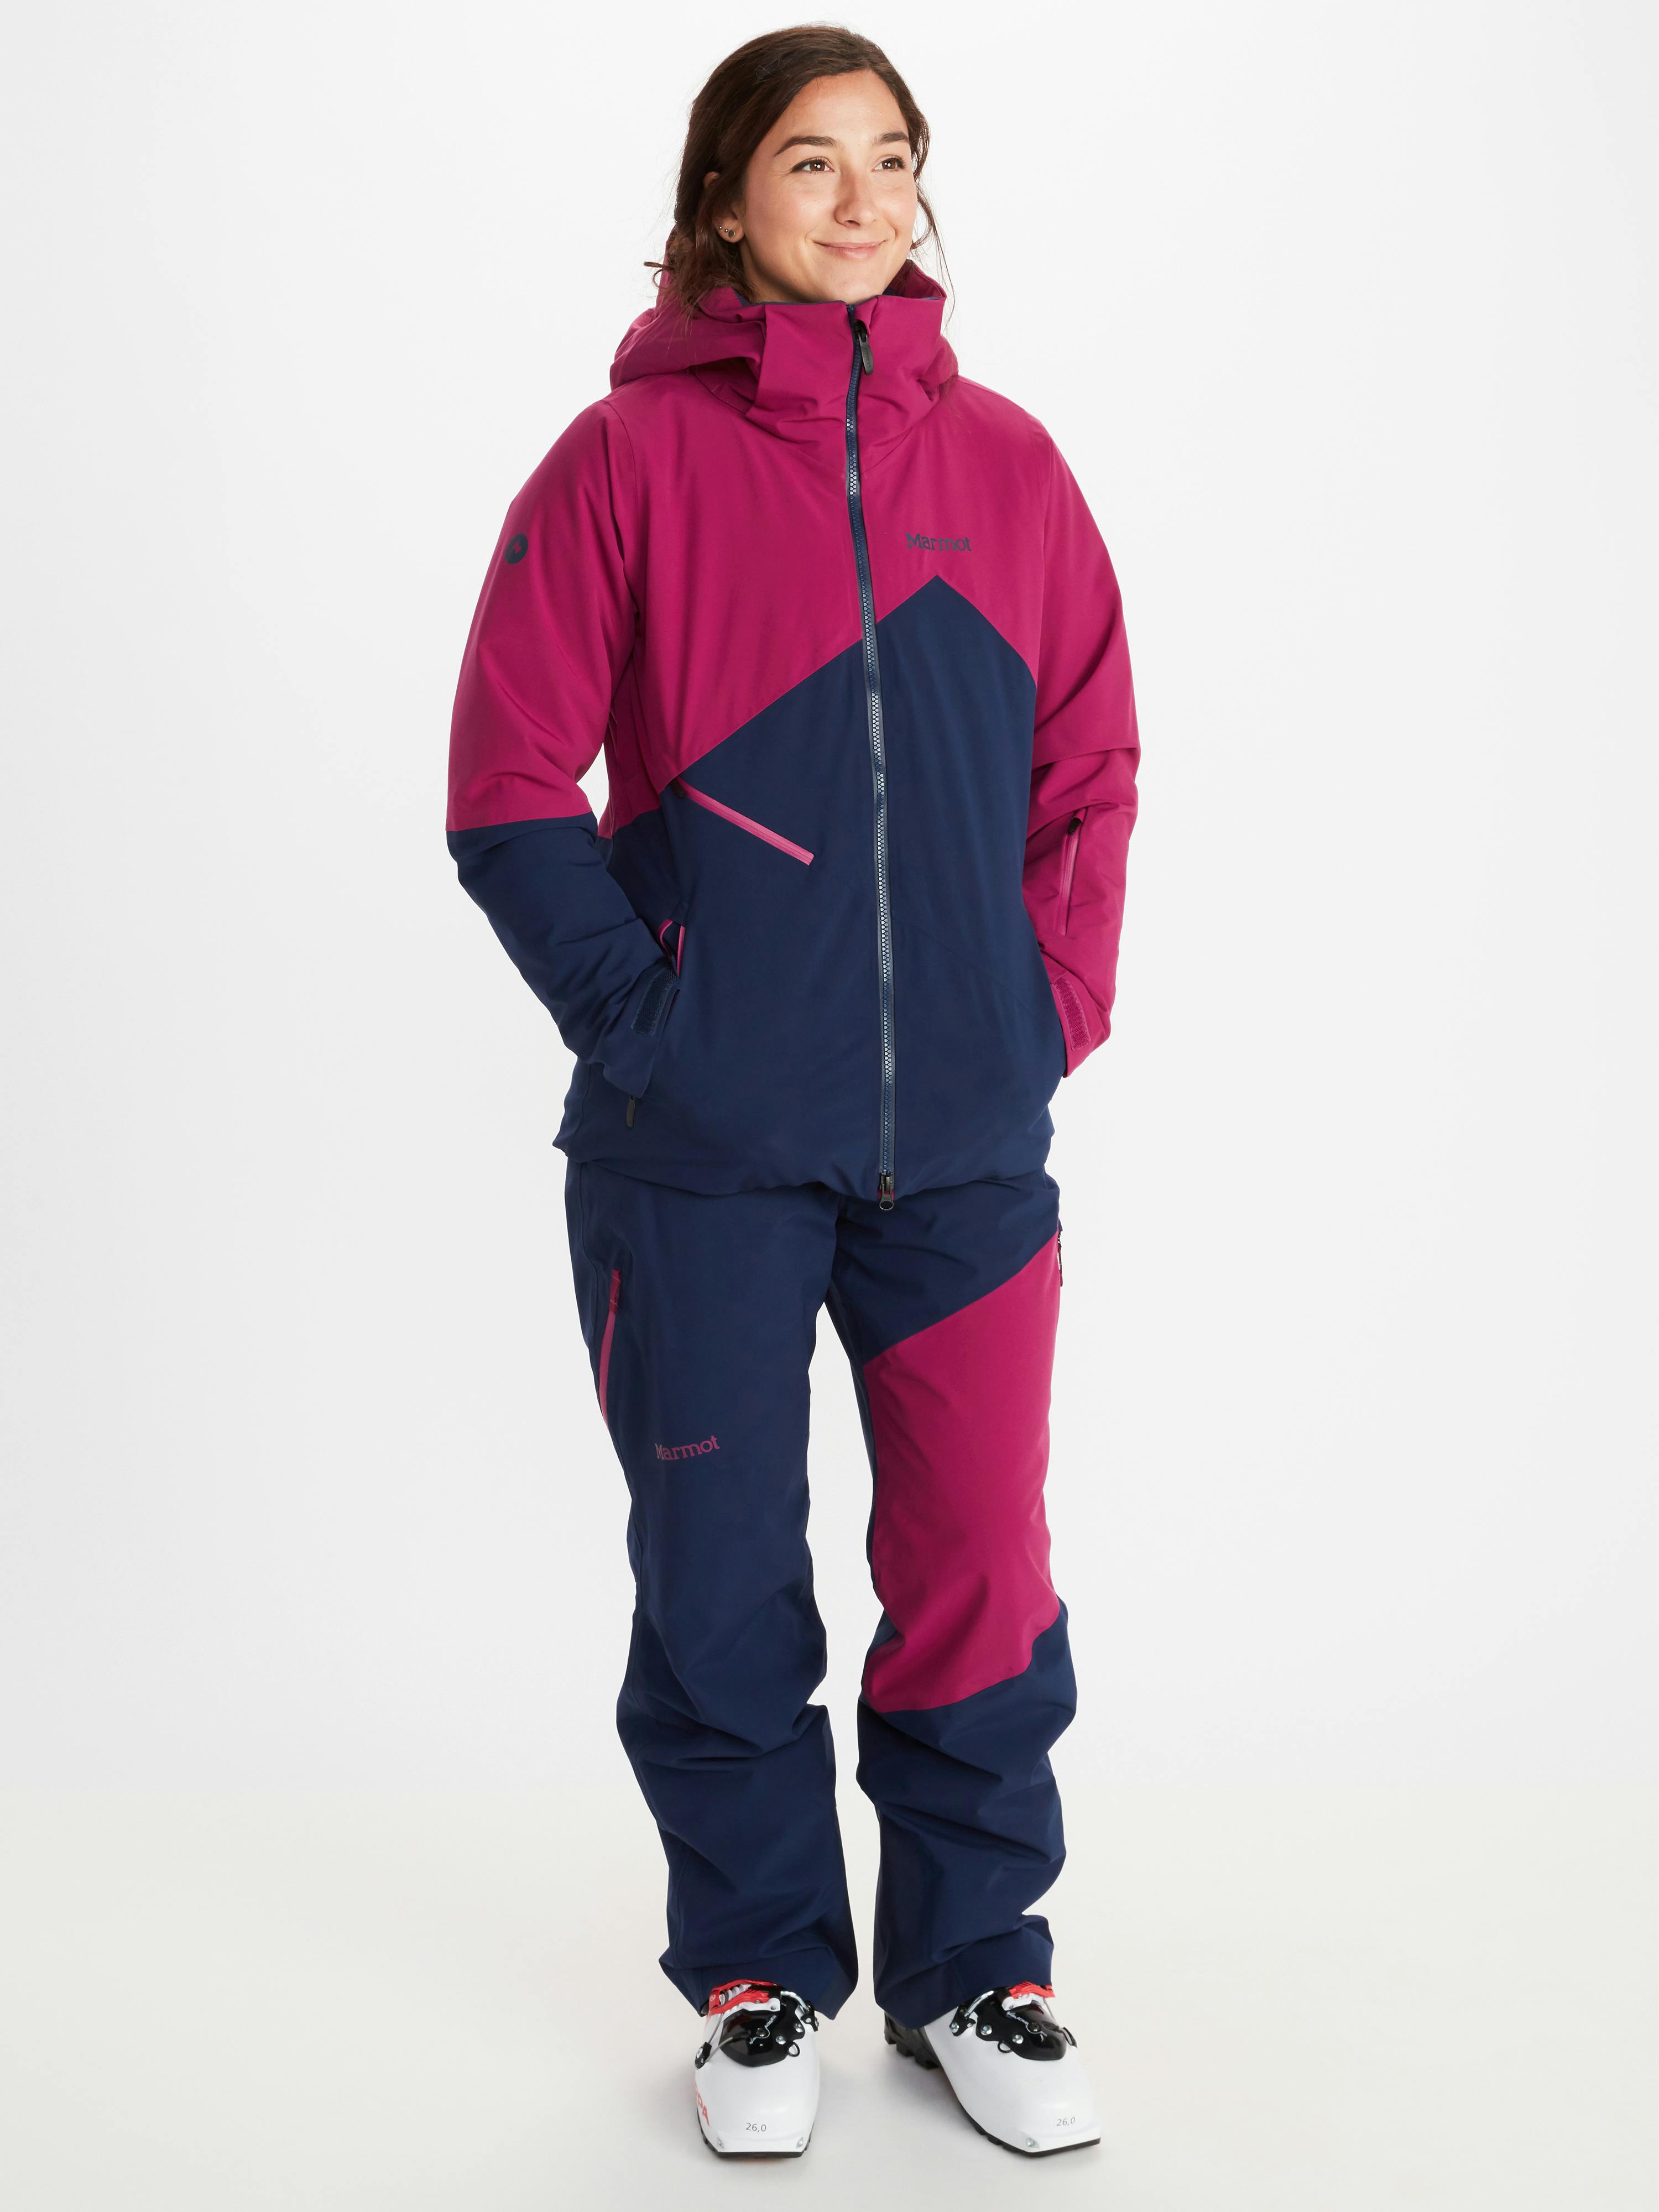 Marmot Women's Pace Jacket